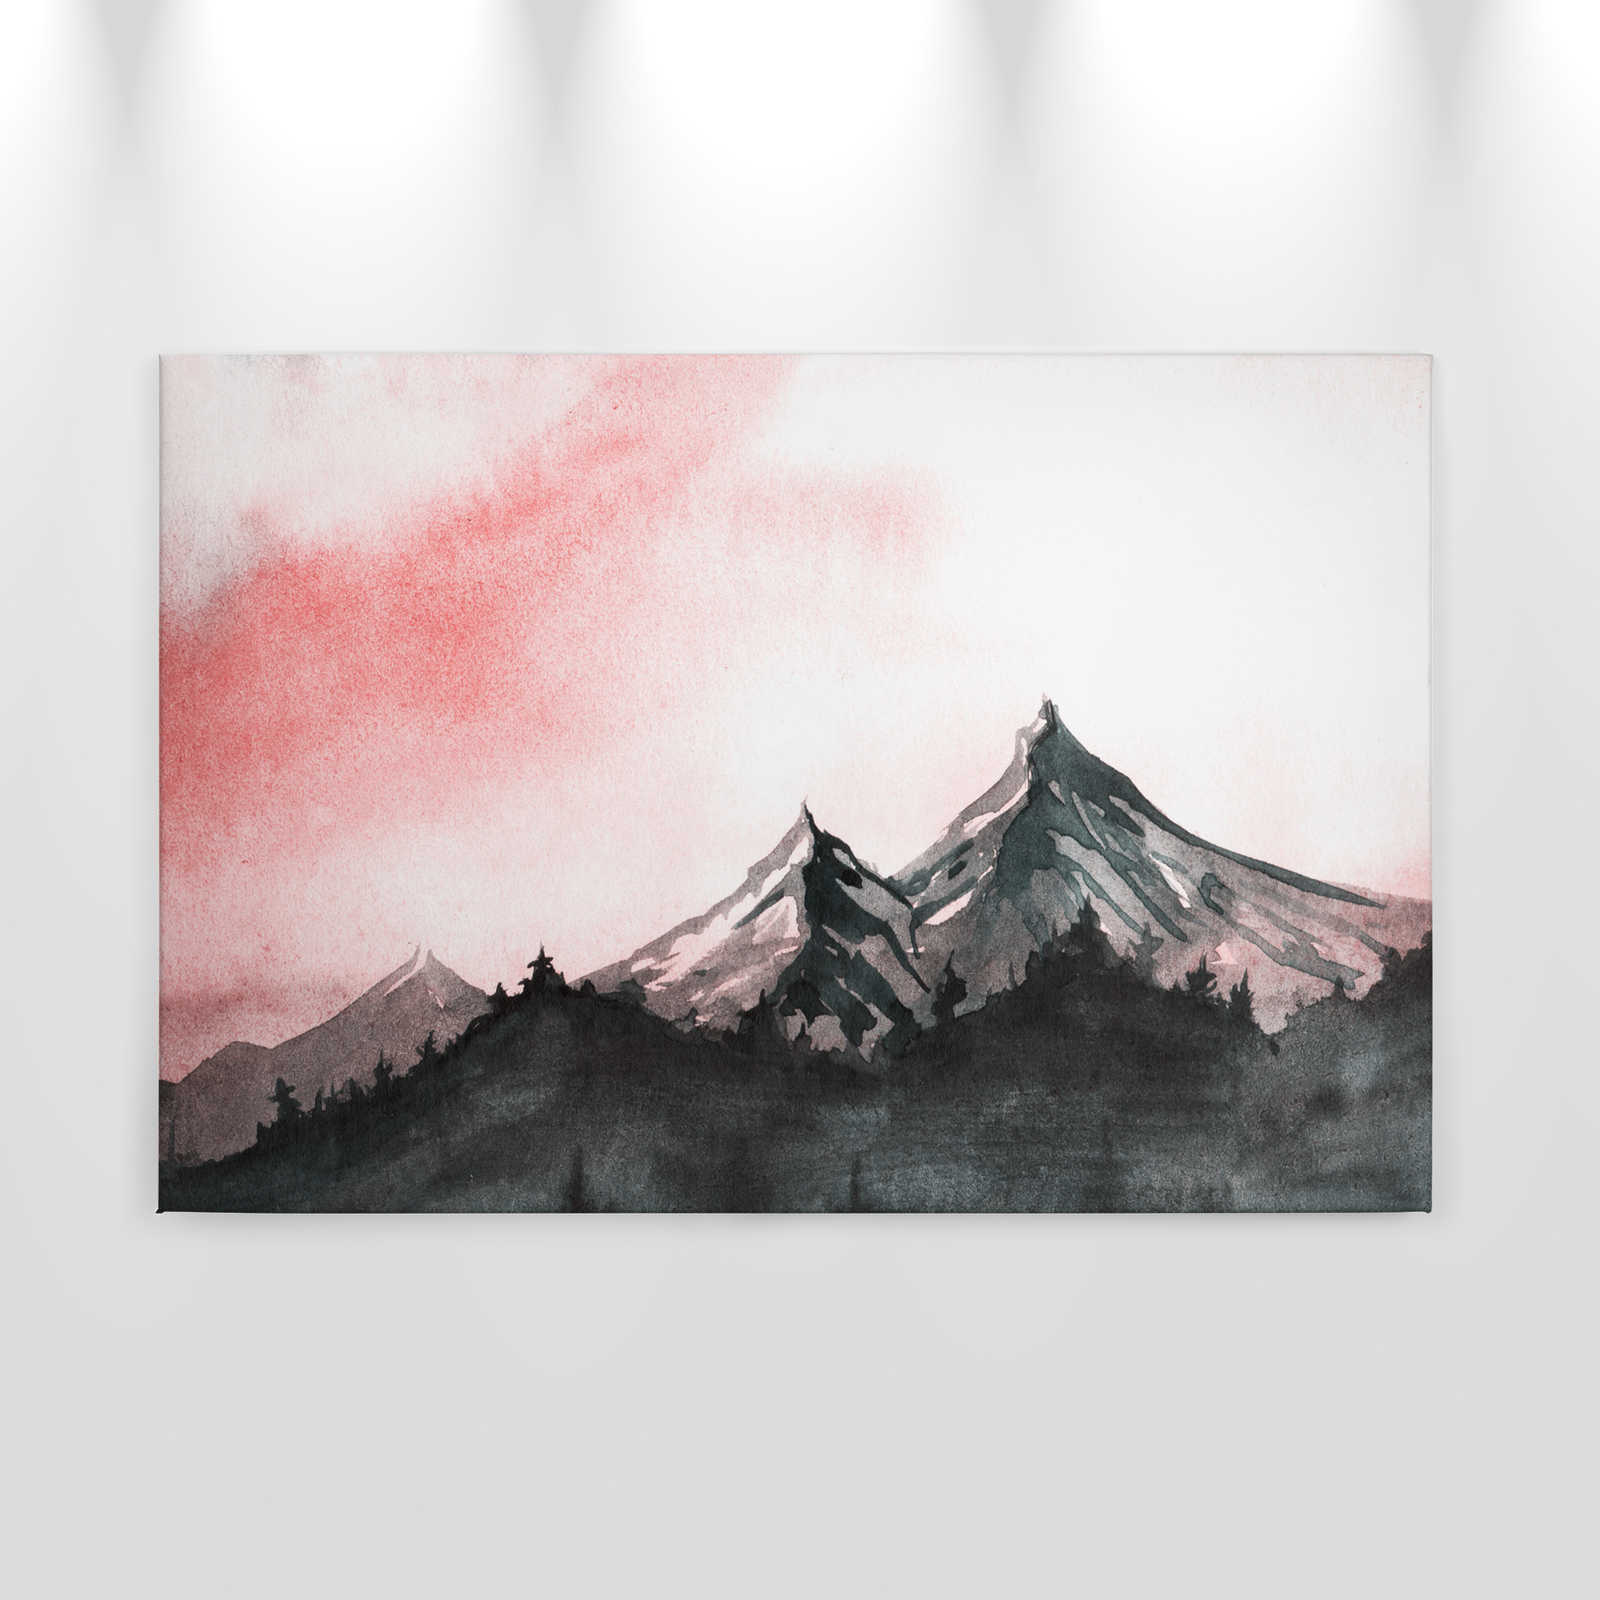             Canvas met berglandschap in aquarelstijl - 0,90 m x 0,60 m
        